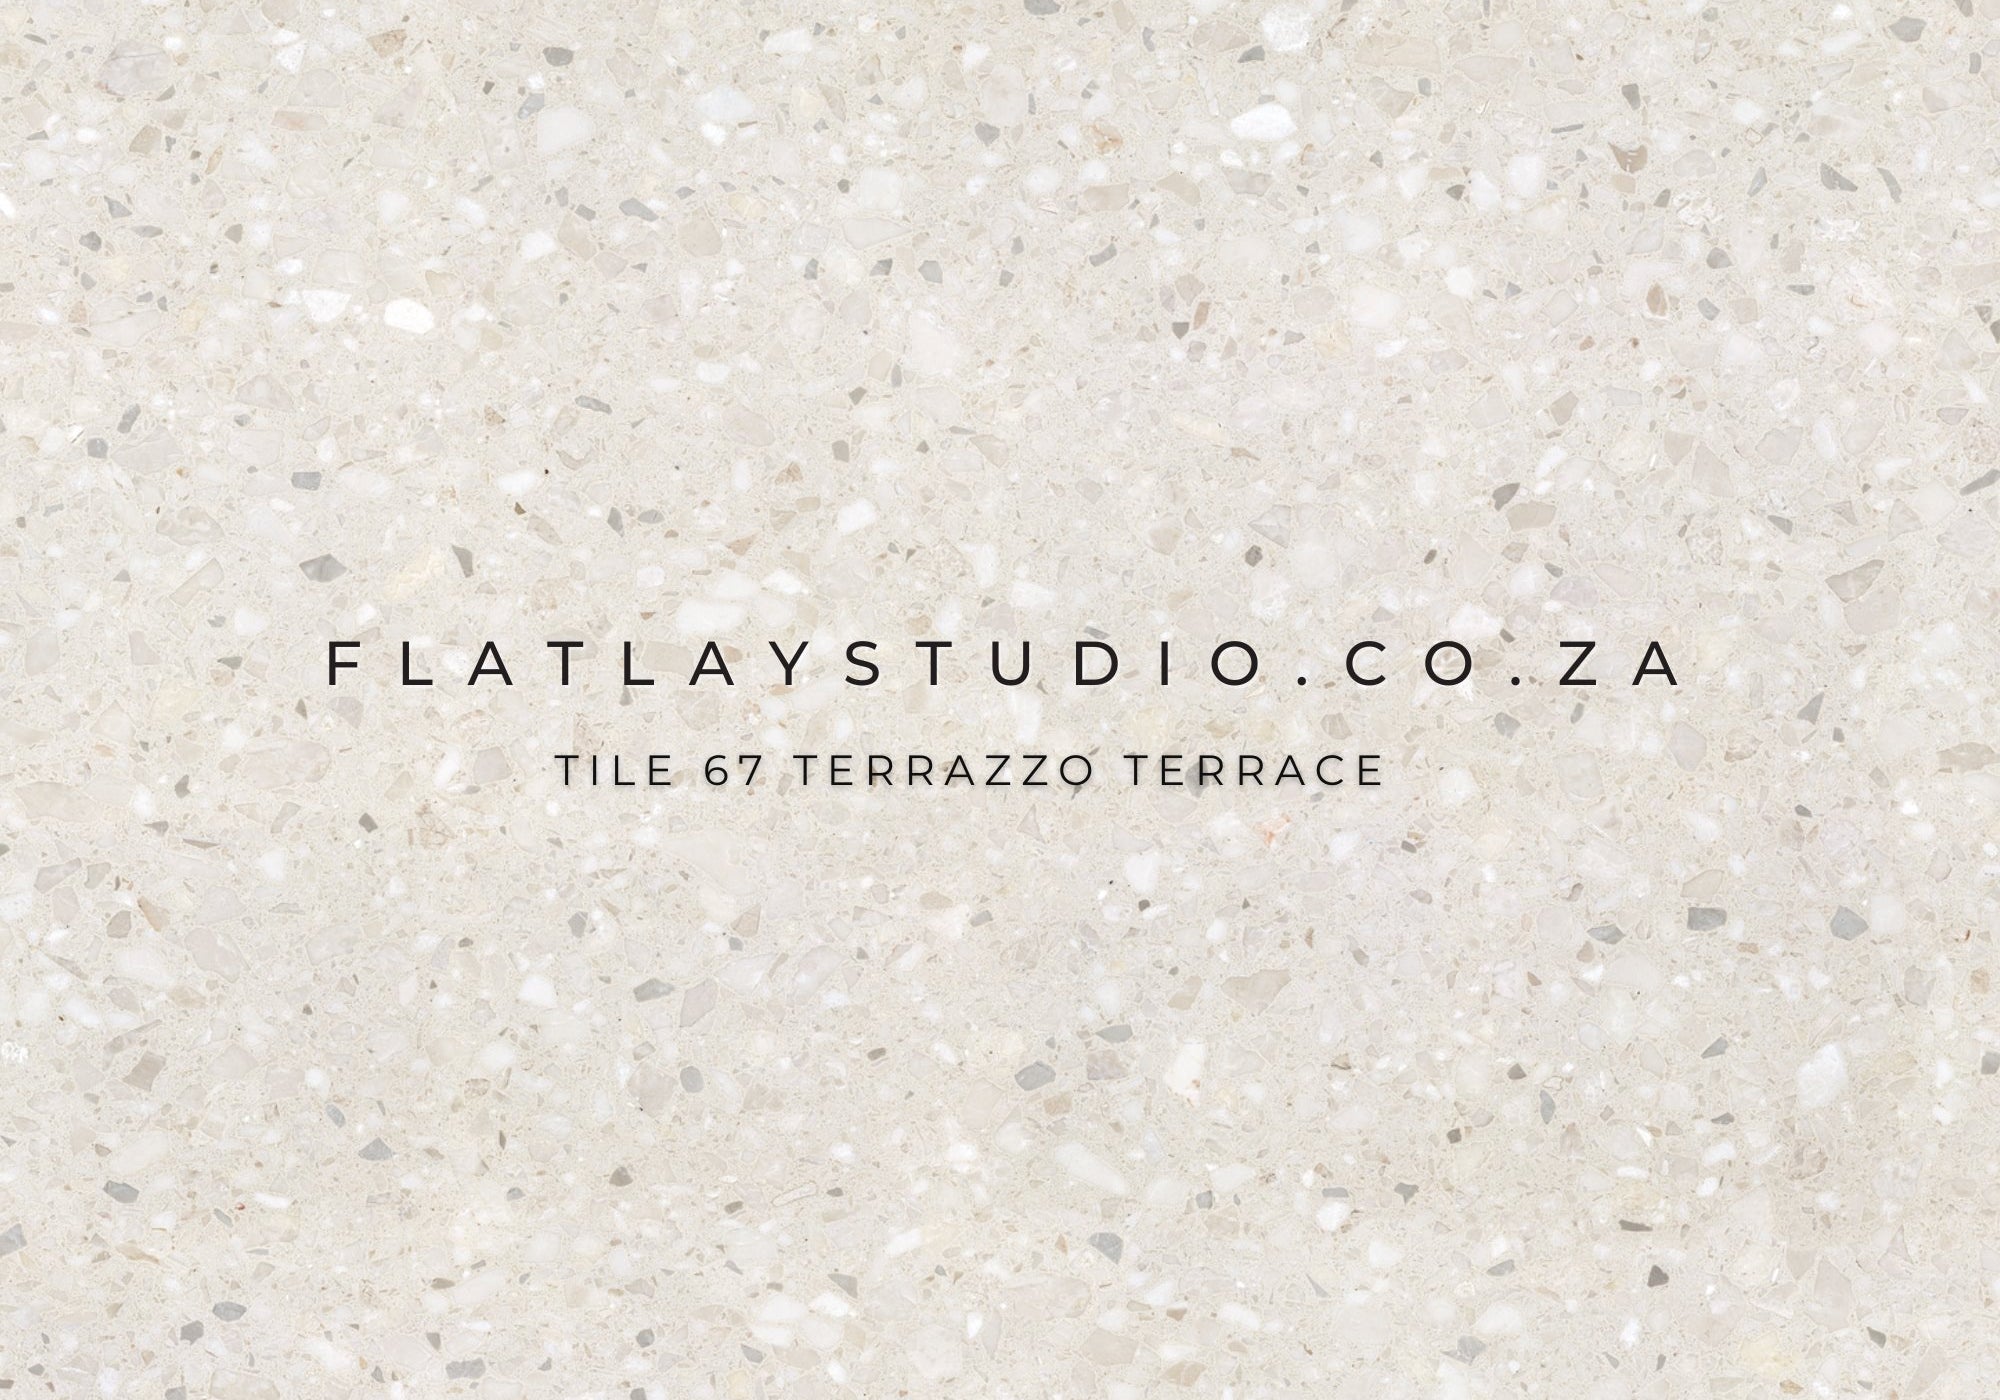 Tile 67 Terrazzo Terrace Flatlay Styling Board Flatlay Studio 